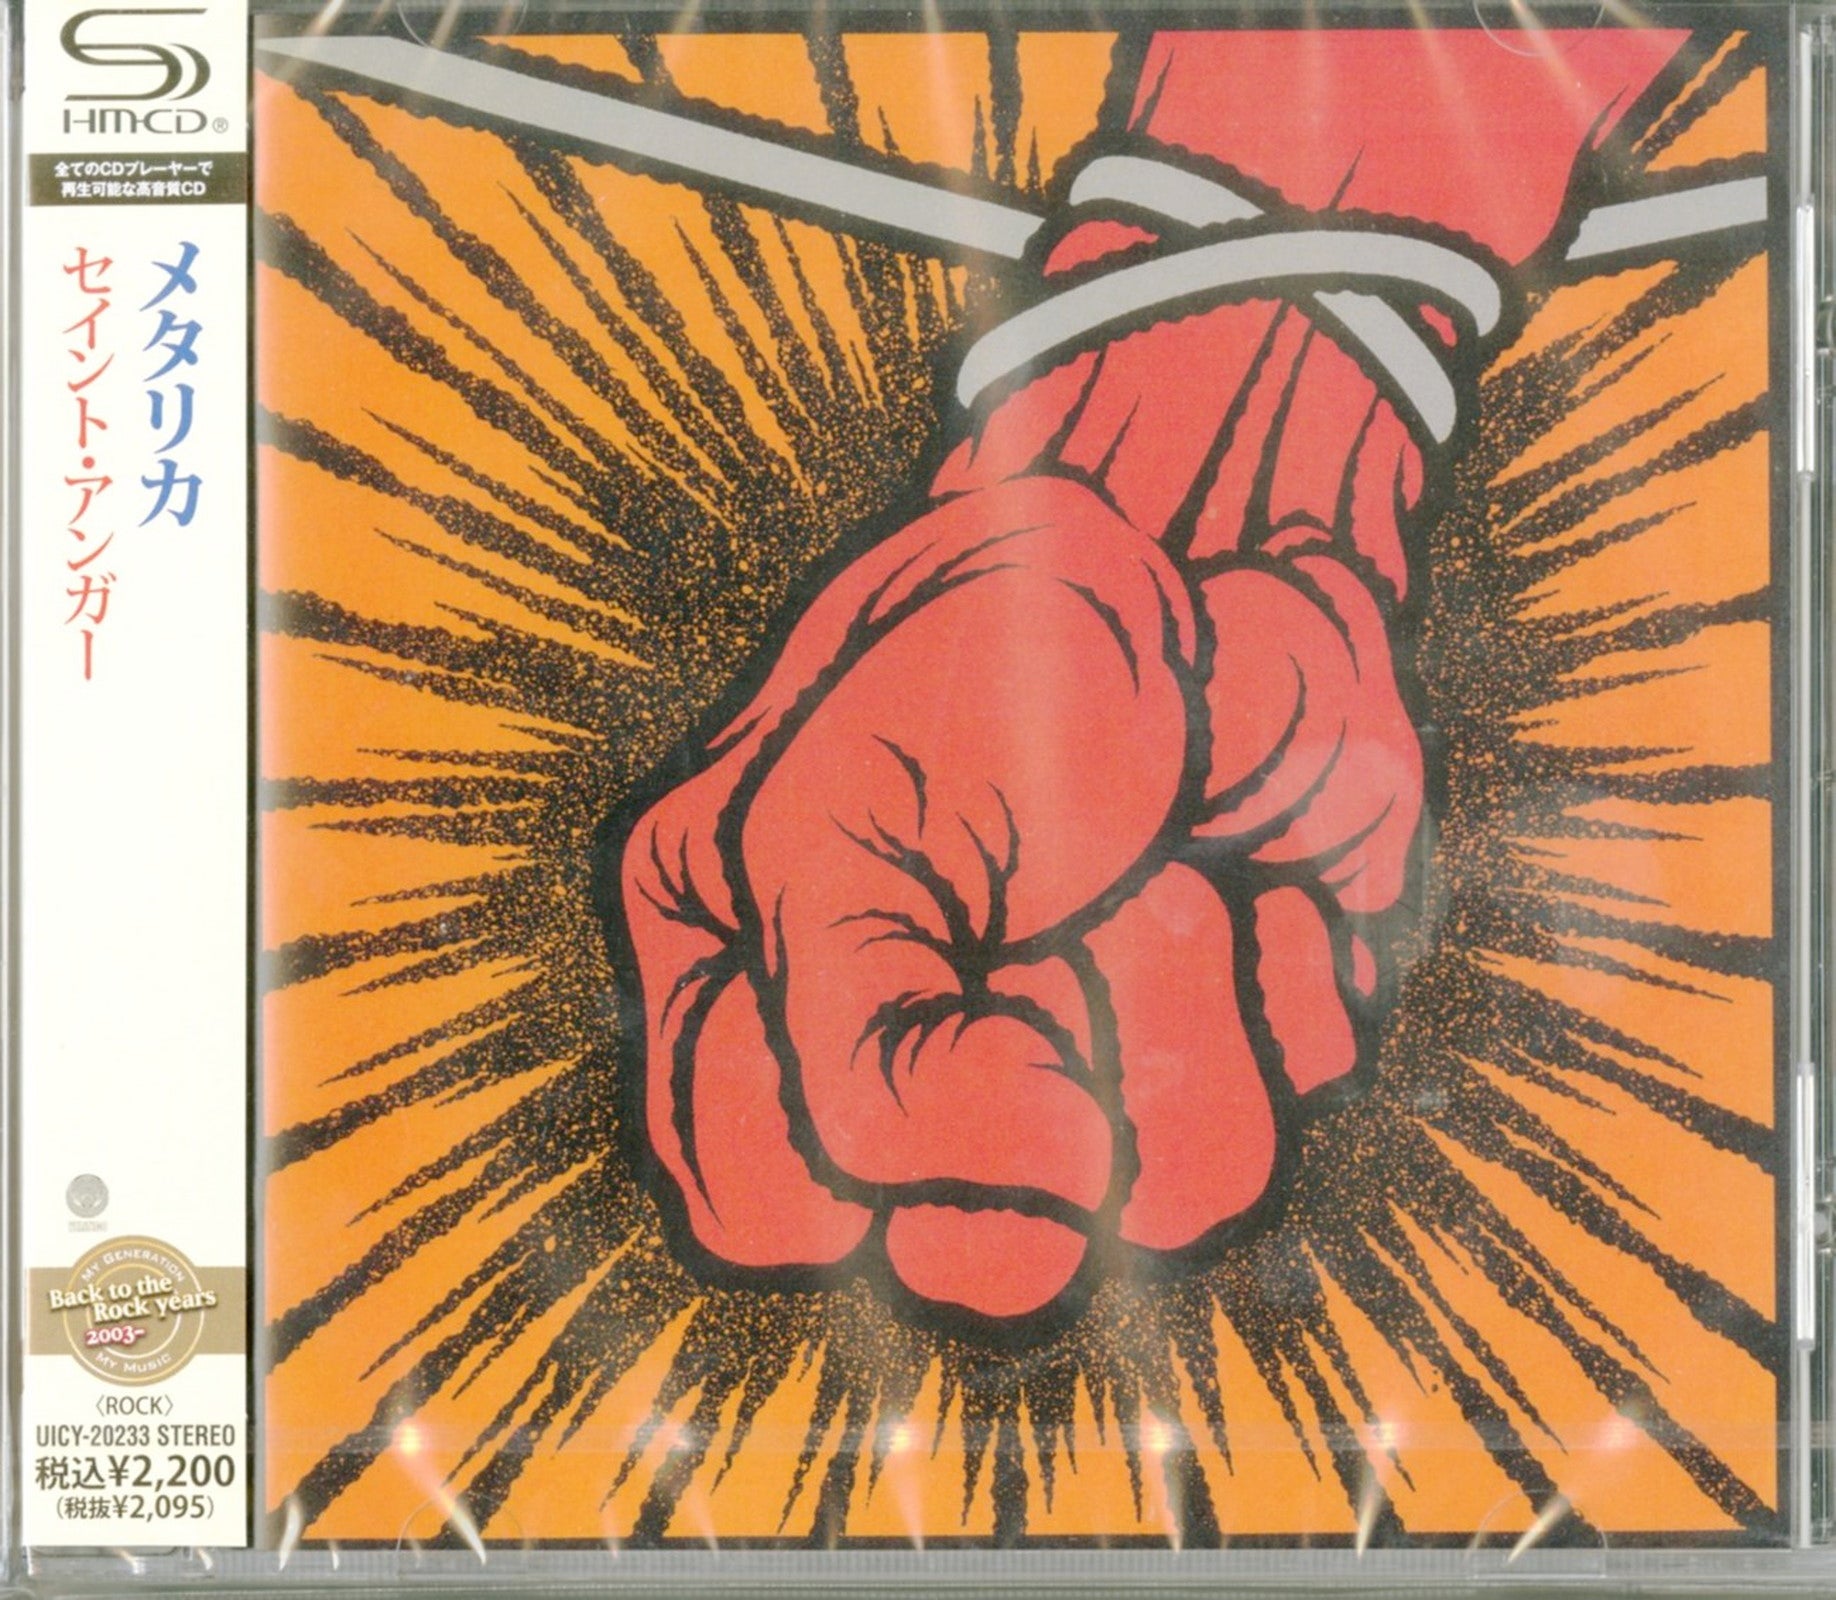 CDs　St.　–　SHM-CD　Japan　Anger　Metallica　Vinyl　Japan　Store